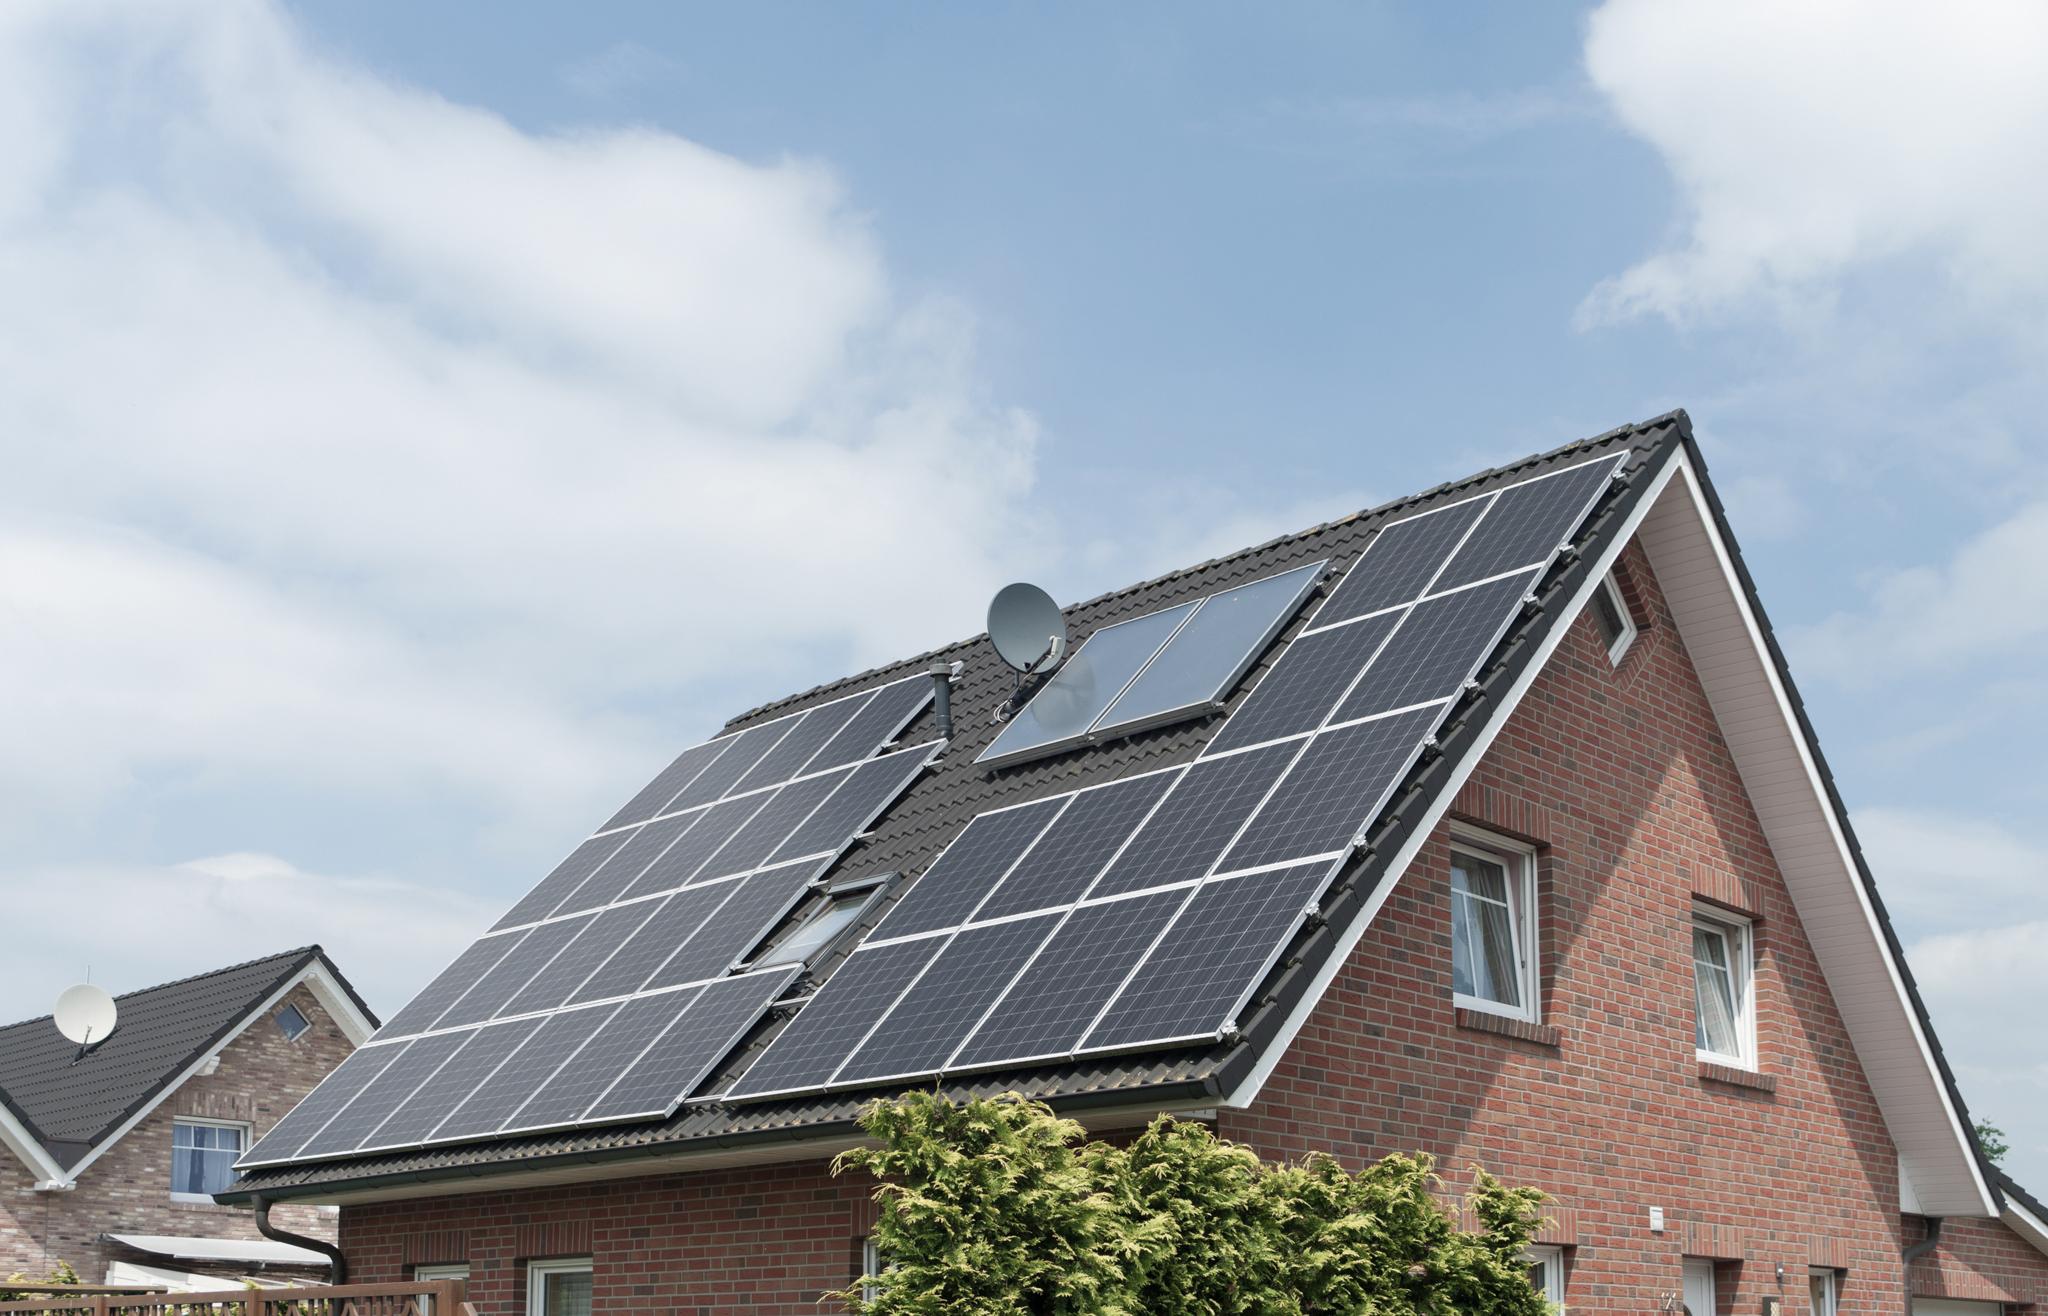 Einfamilienhaus mit Solaranlage auf dem Dach – Geld sparen mit Solarenergie